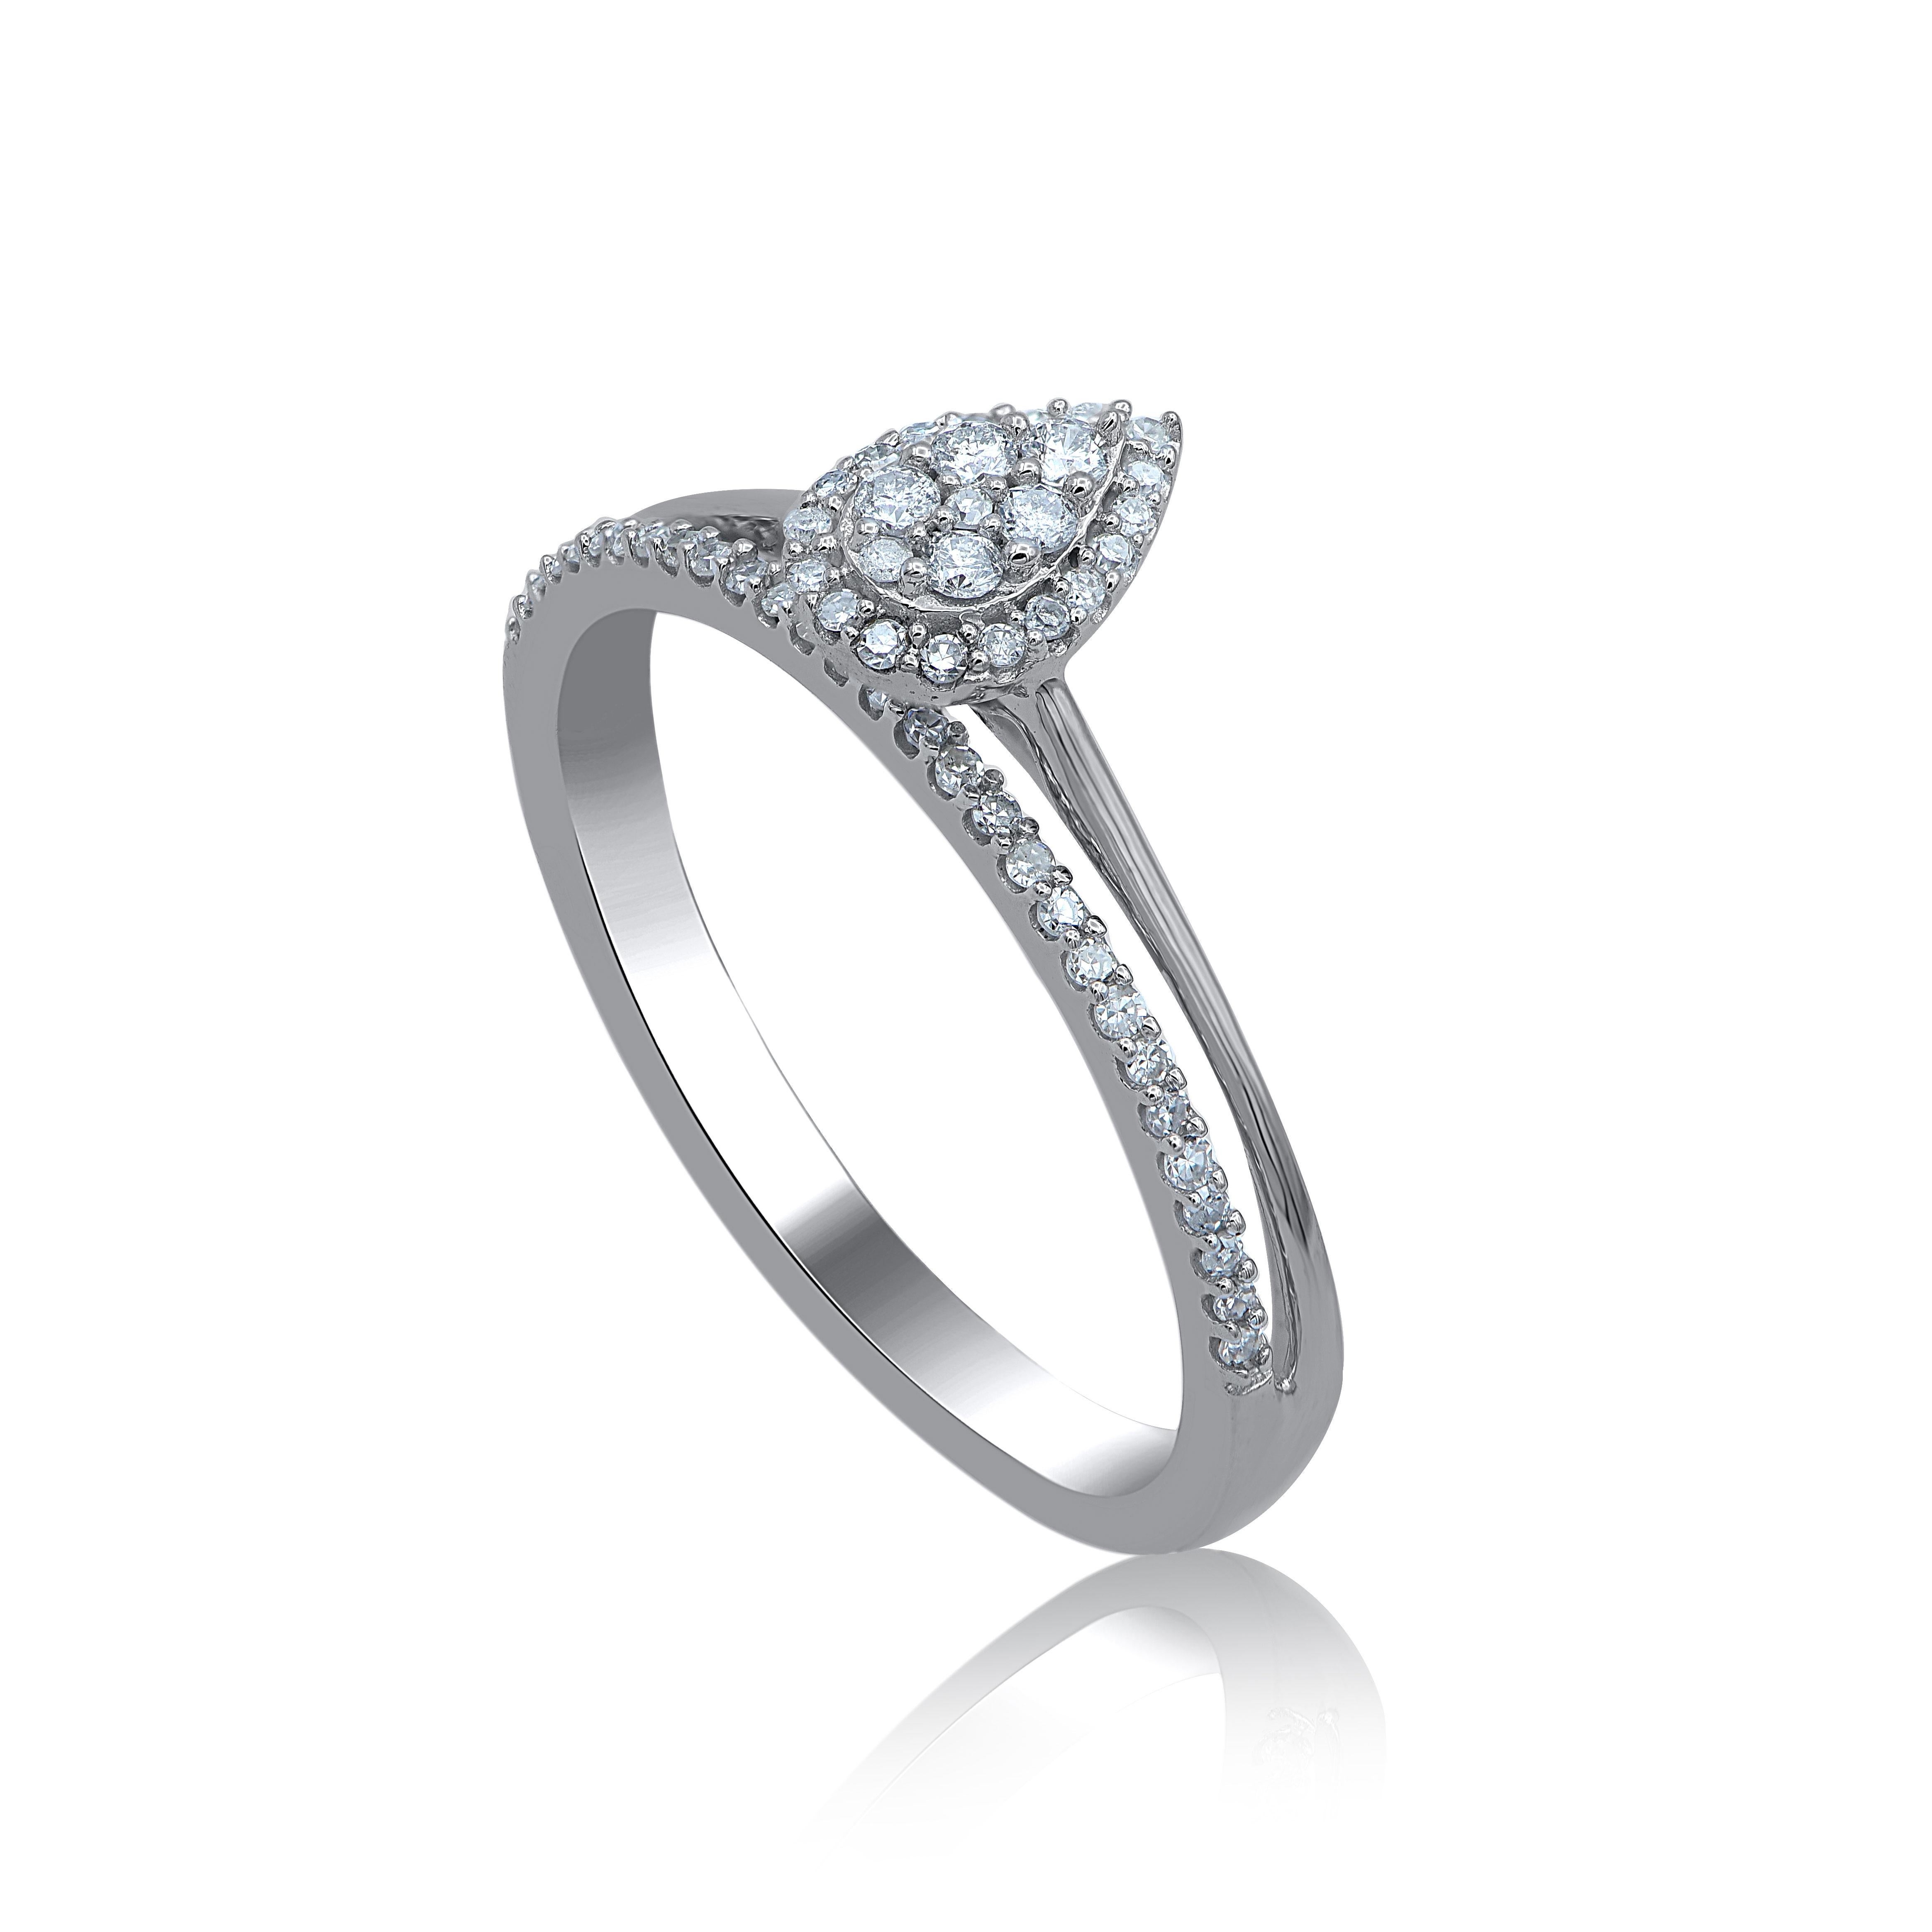 Bringen Sie Ihre Liebe zu ihr auf die klassischste Art und Weise mit diesem Diamantring zum Ausdruck. Gefertigt aus 14 Karat Weißgold. Dieser birnenförmige Verlobungsring hat einen funkelnden 54er Einzelschliff und einen runden Diamanten im